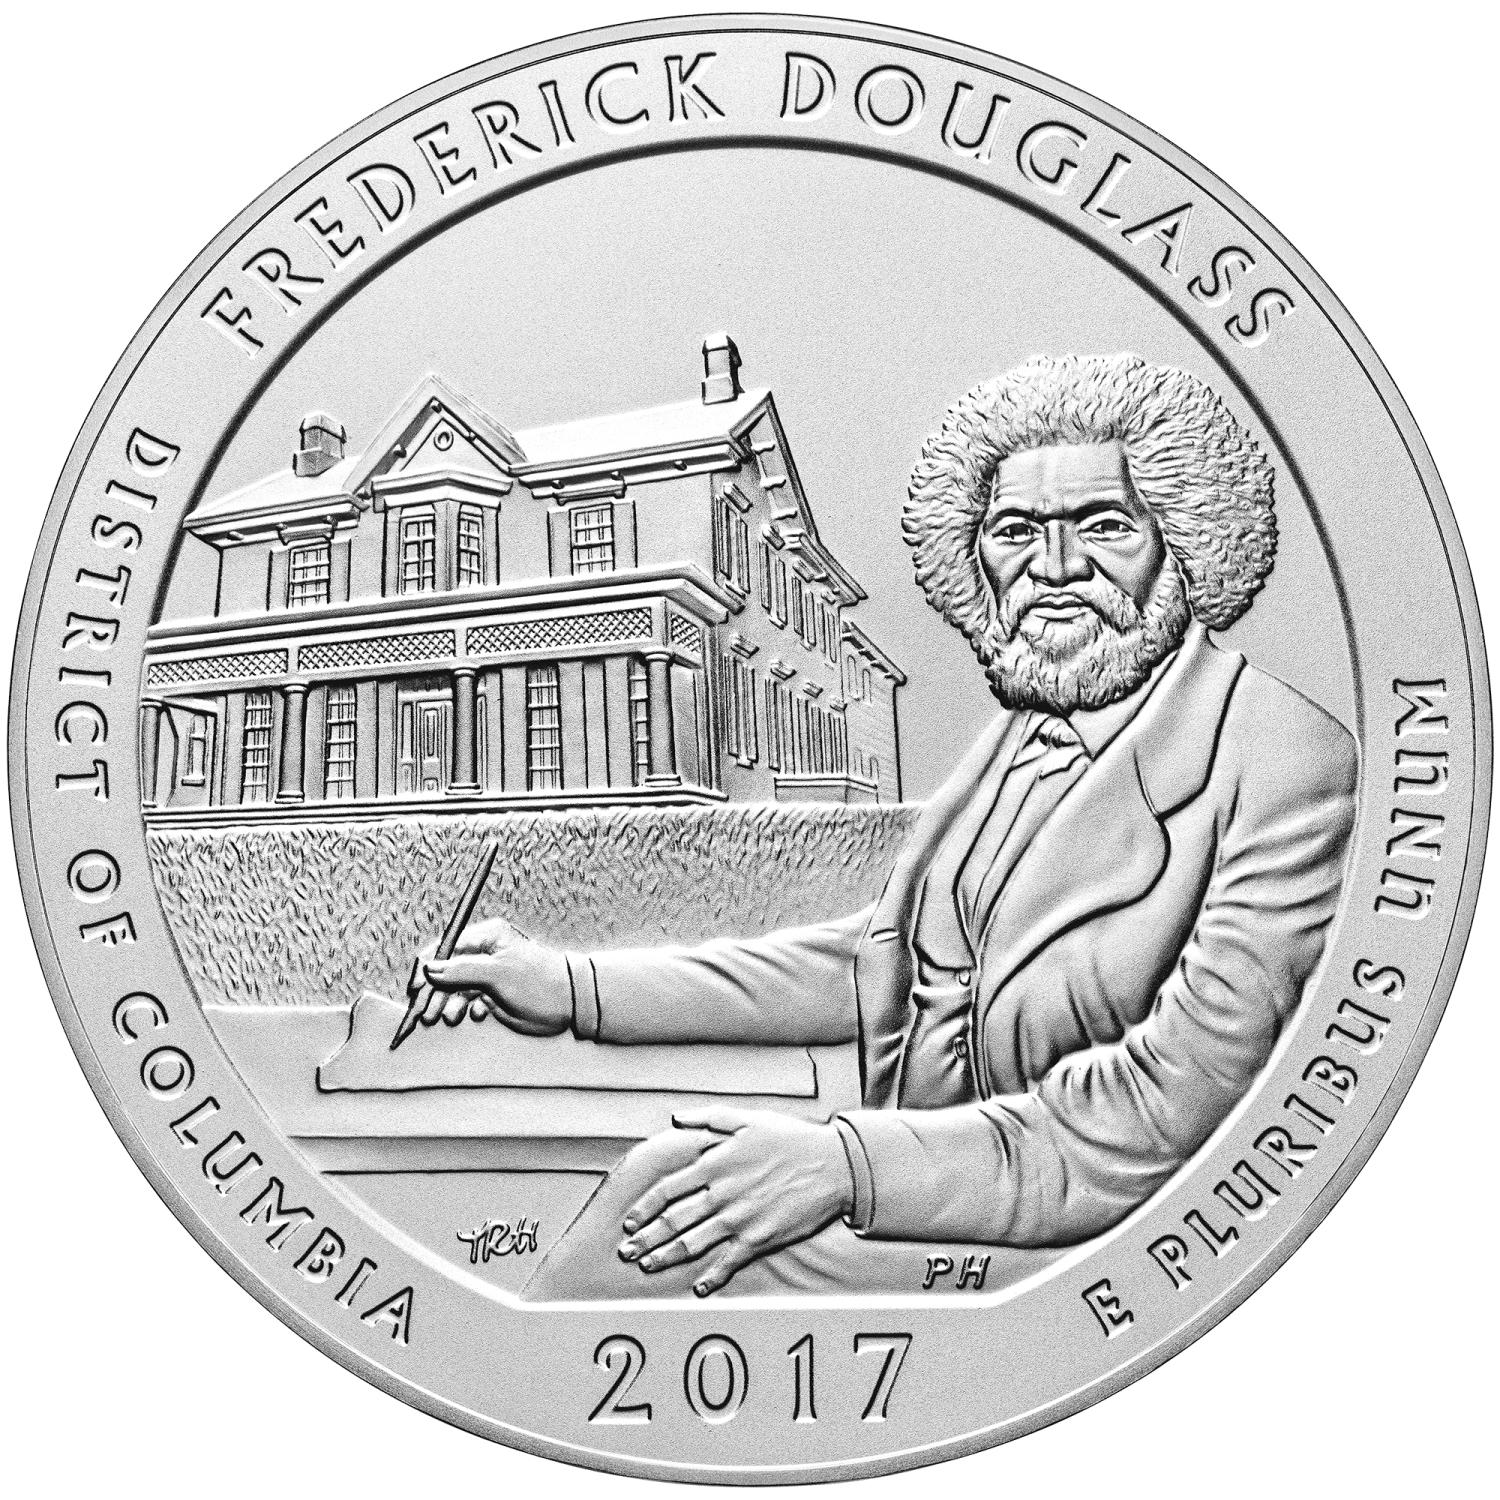 Quarter Dollar Commémorative des Etats-Unis 2017 - Frederick Douglass National Site